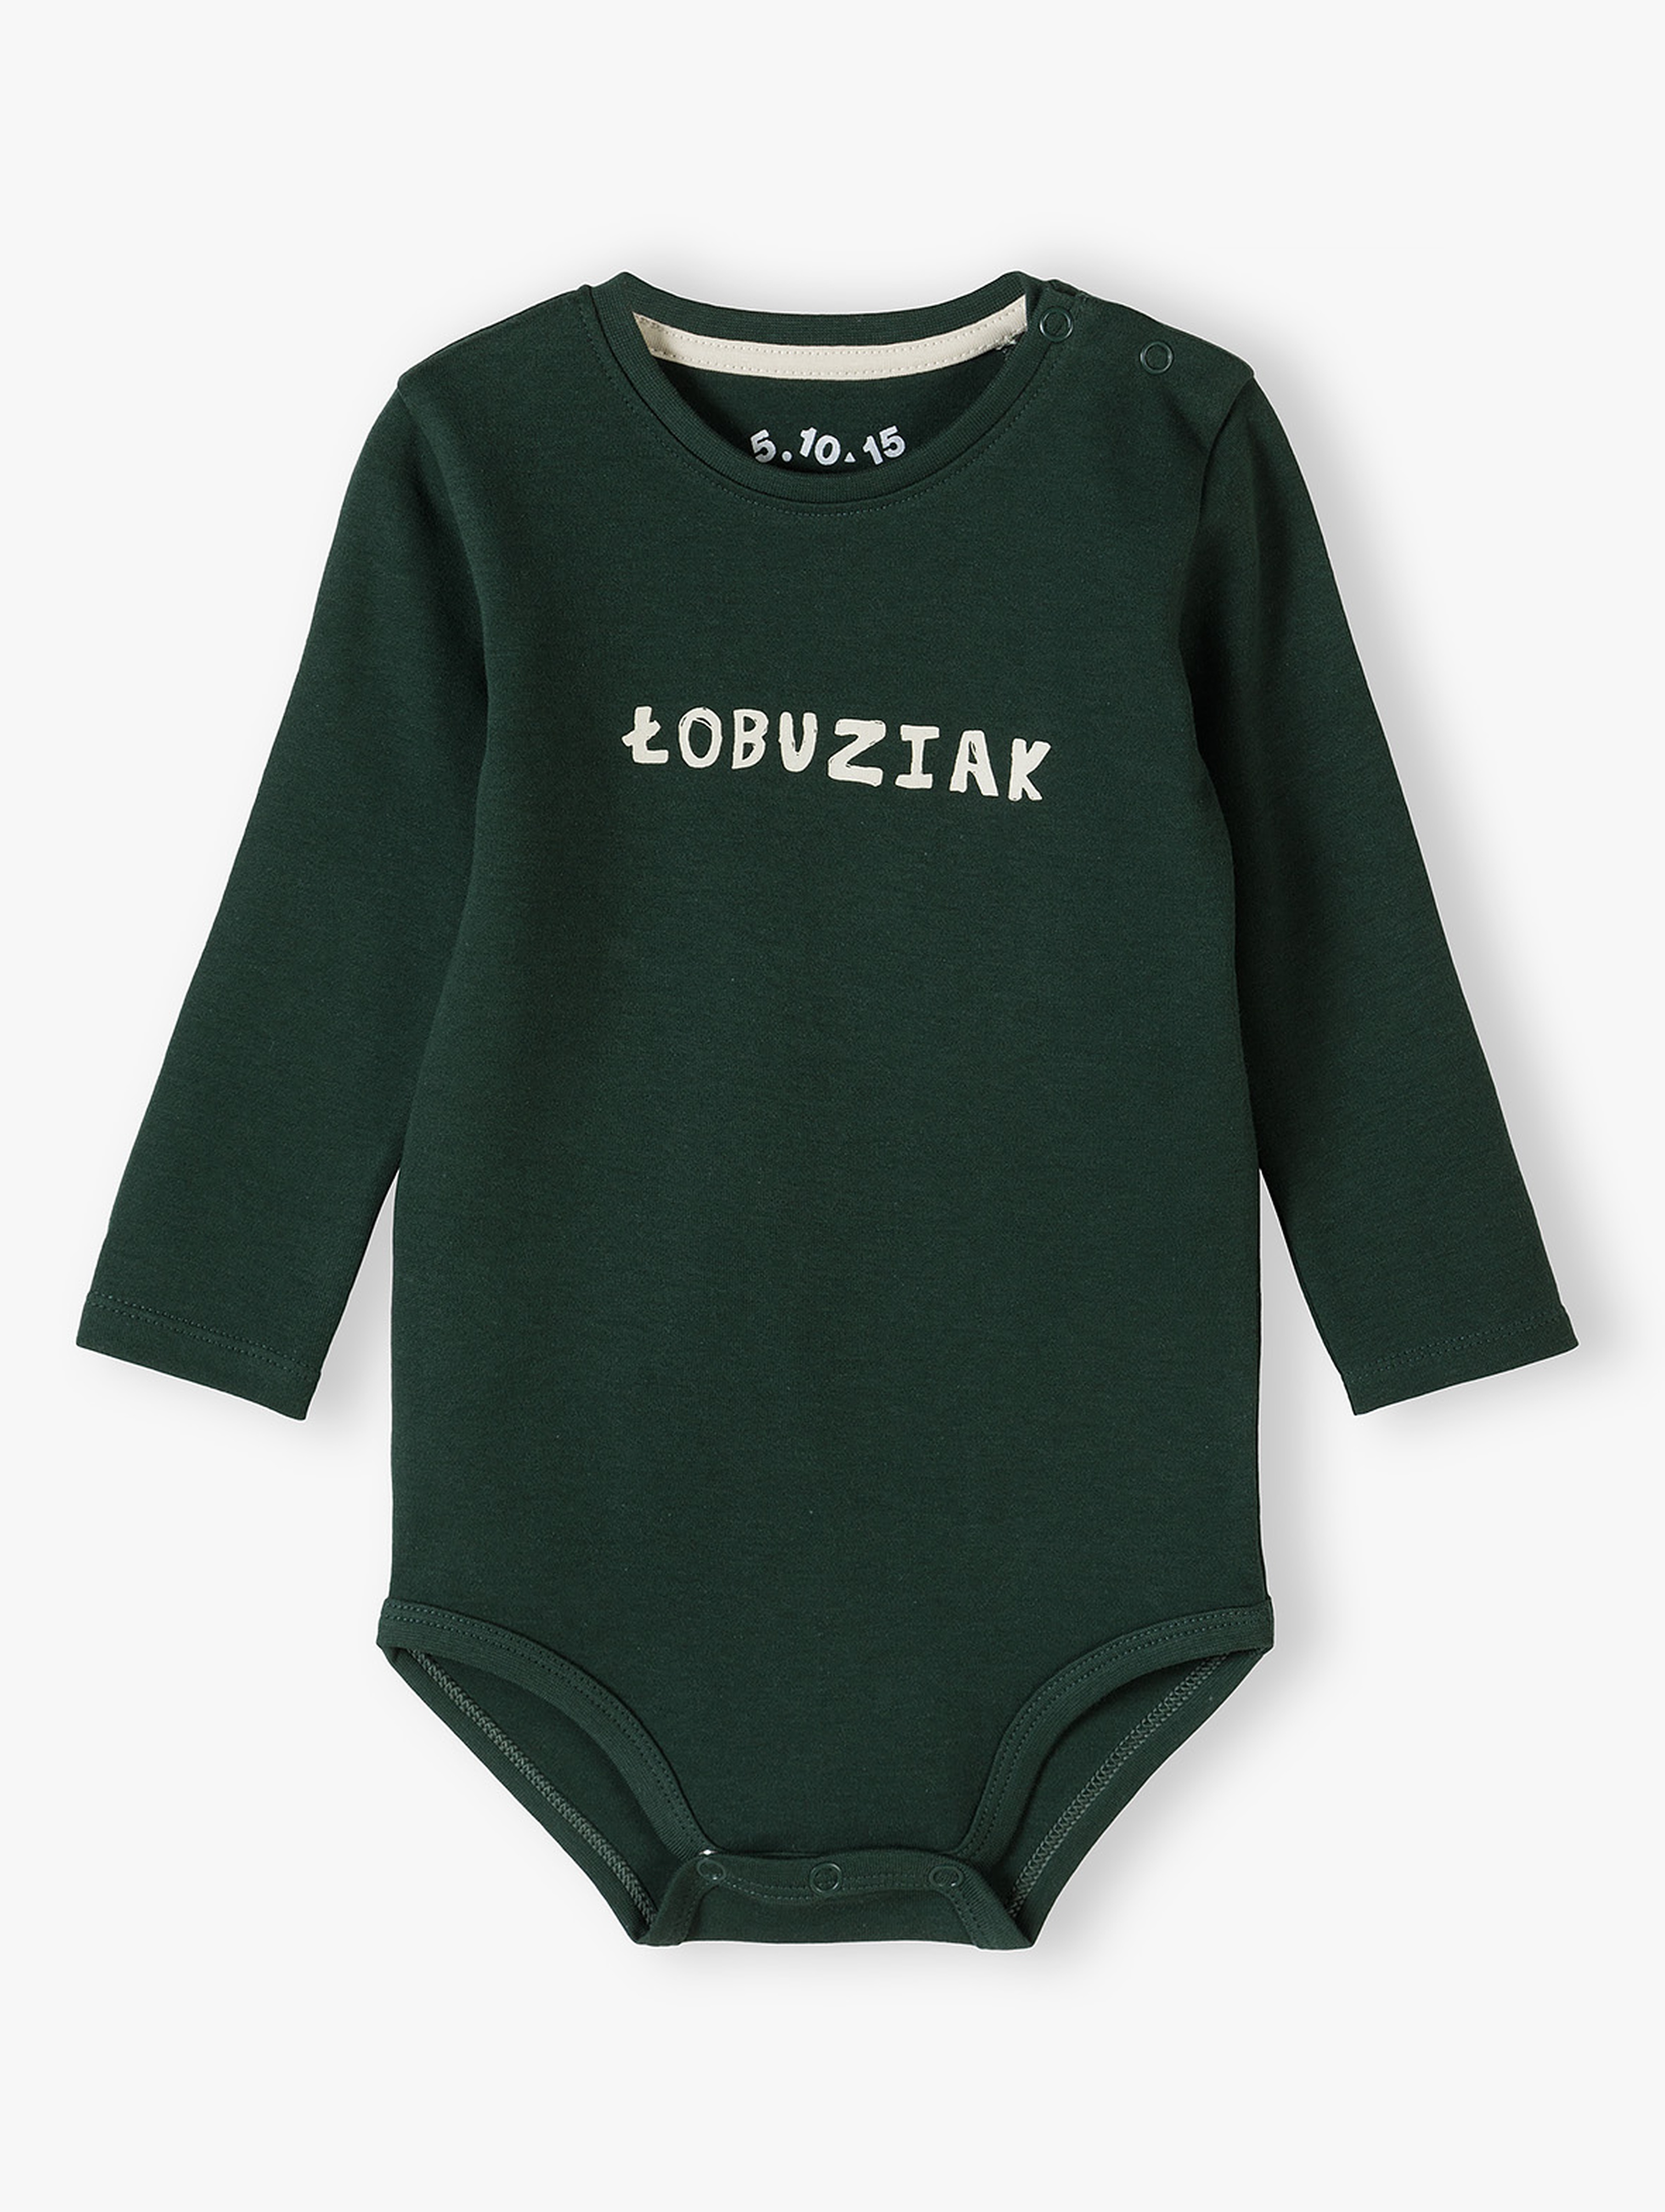 Zielone bawełniane body niemowlęce - ŁOBUZIAK